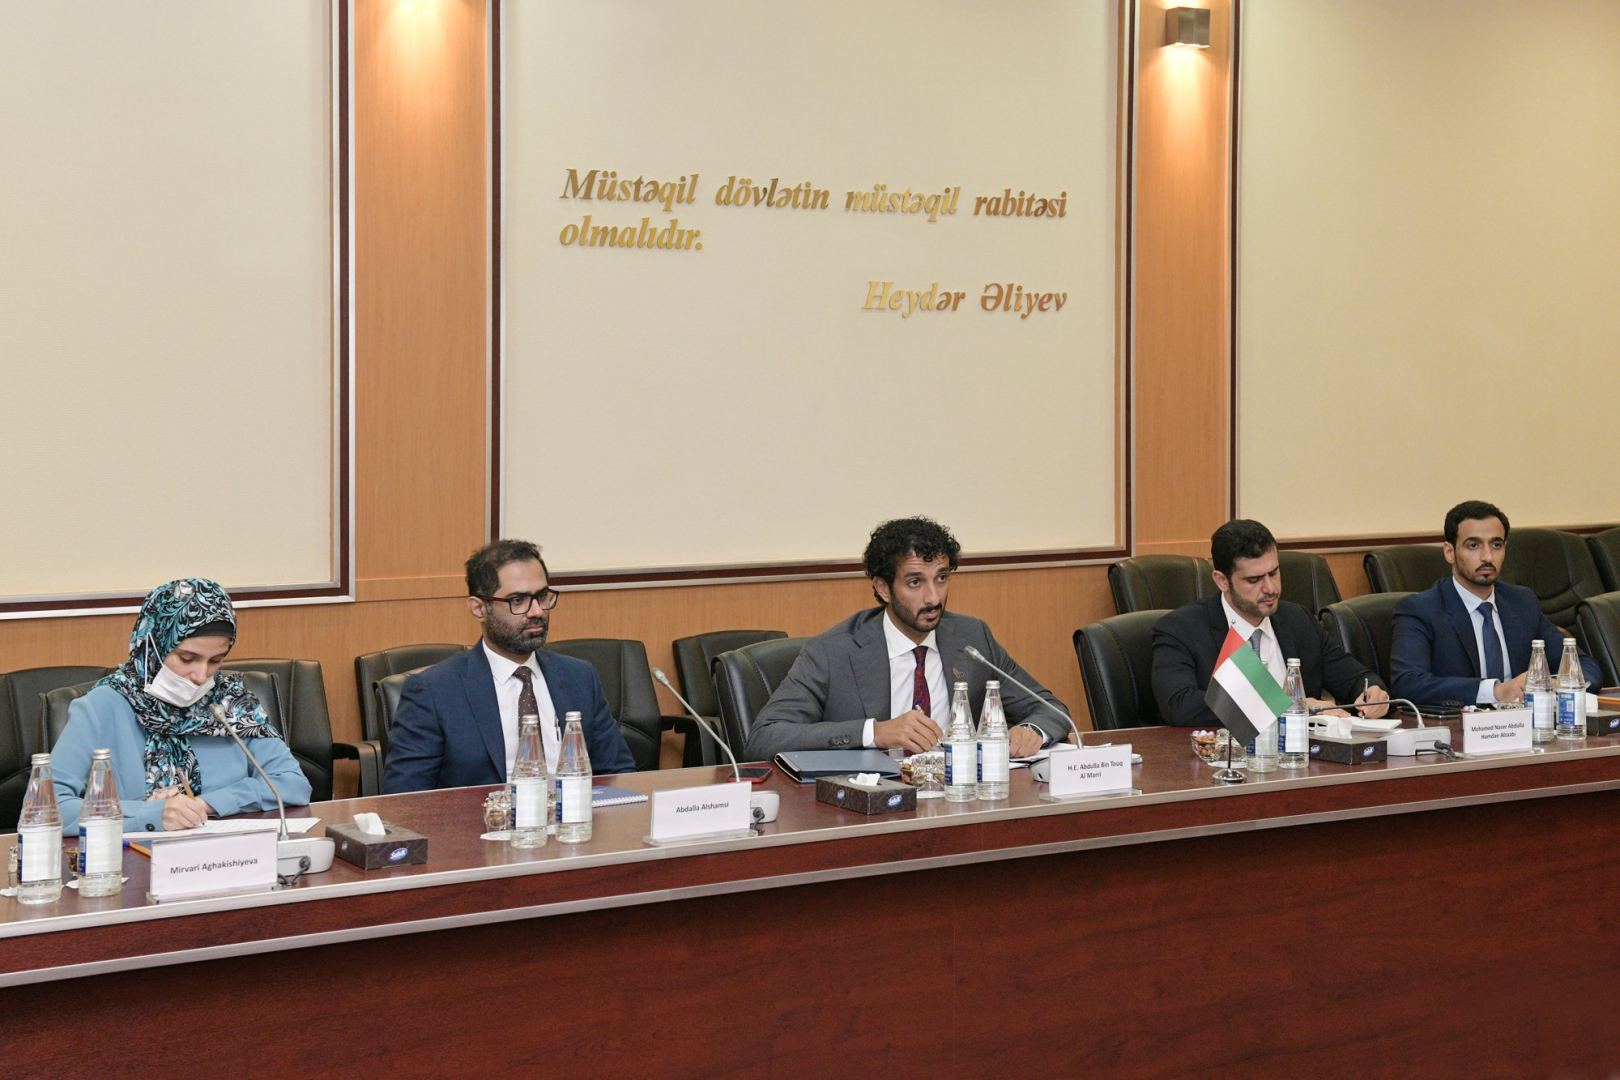 Азербайджан и ОАЭ обсудили сотрудничество в сфере высоких технологий (ФОТО)